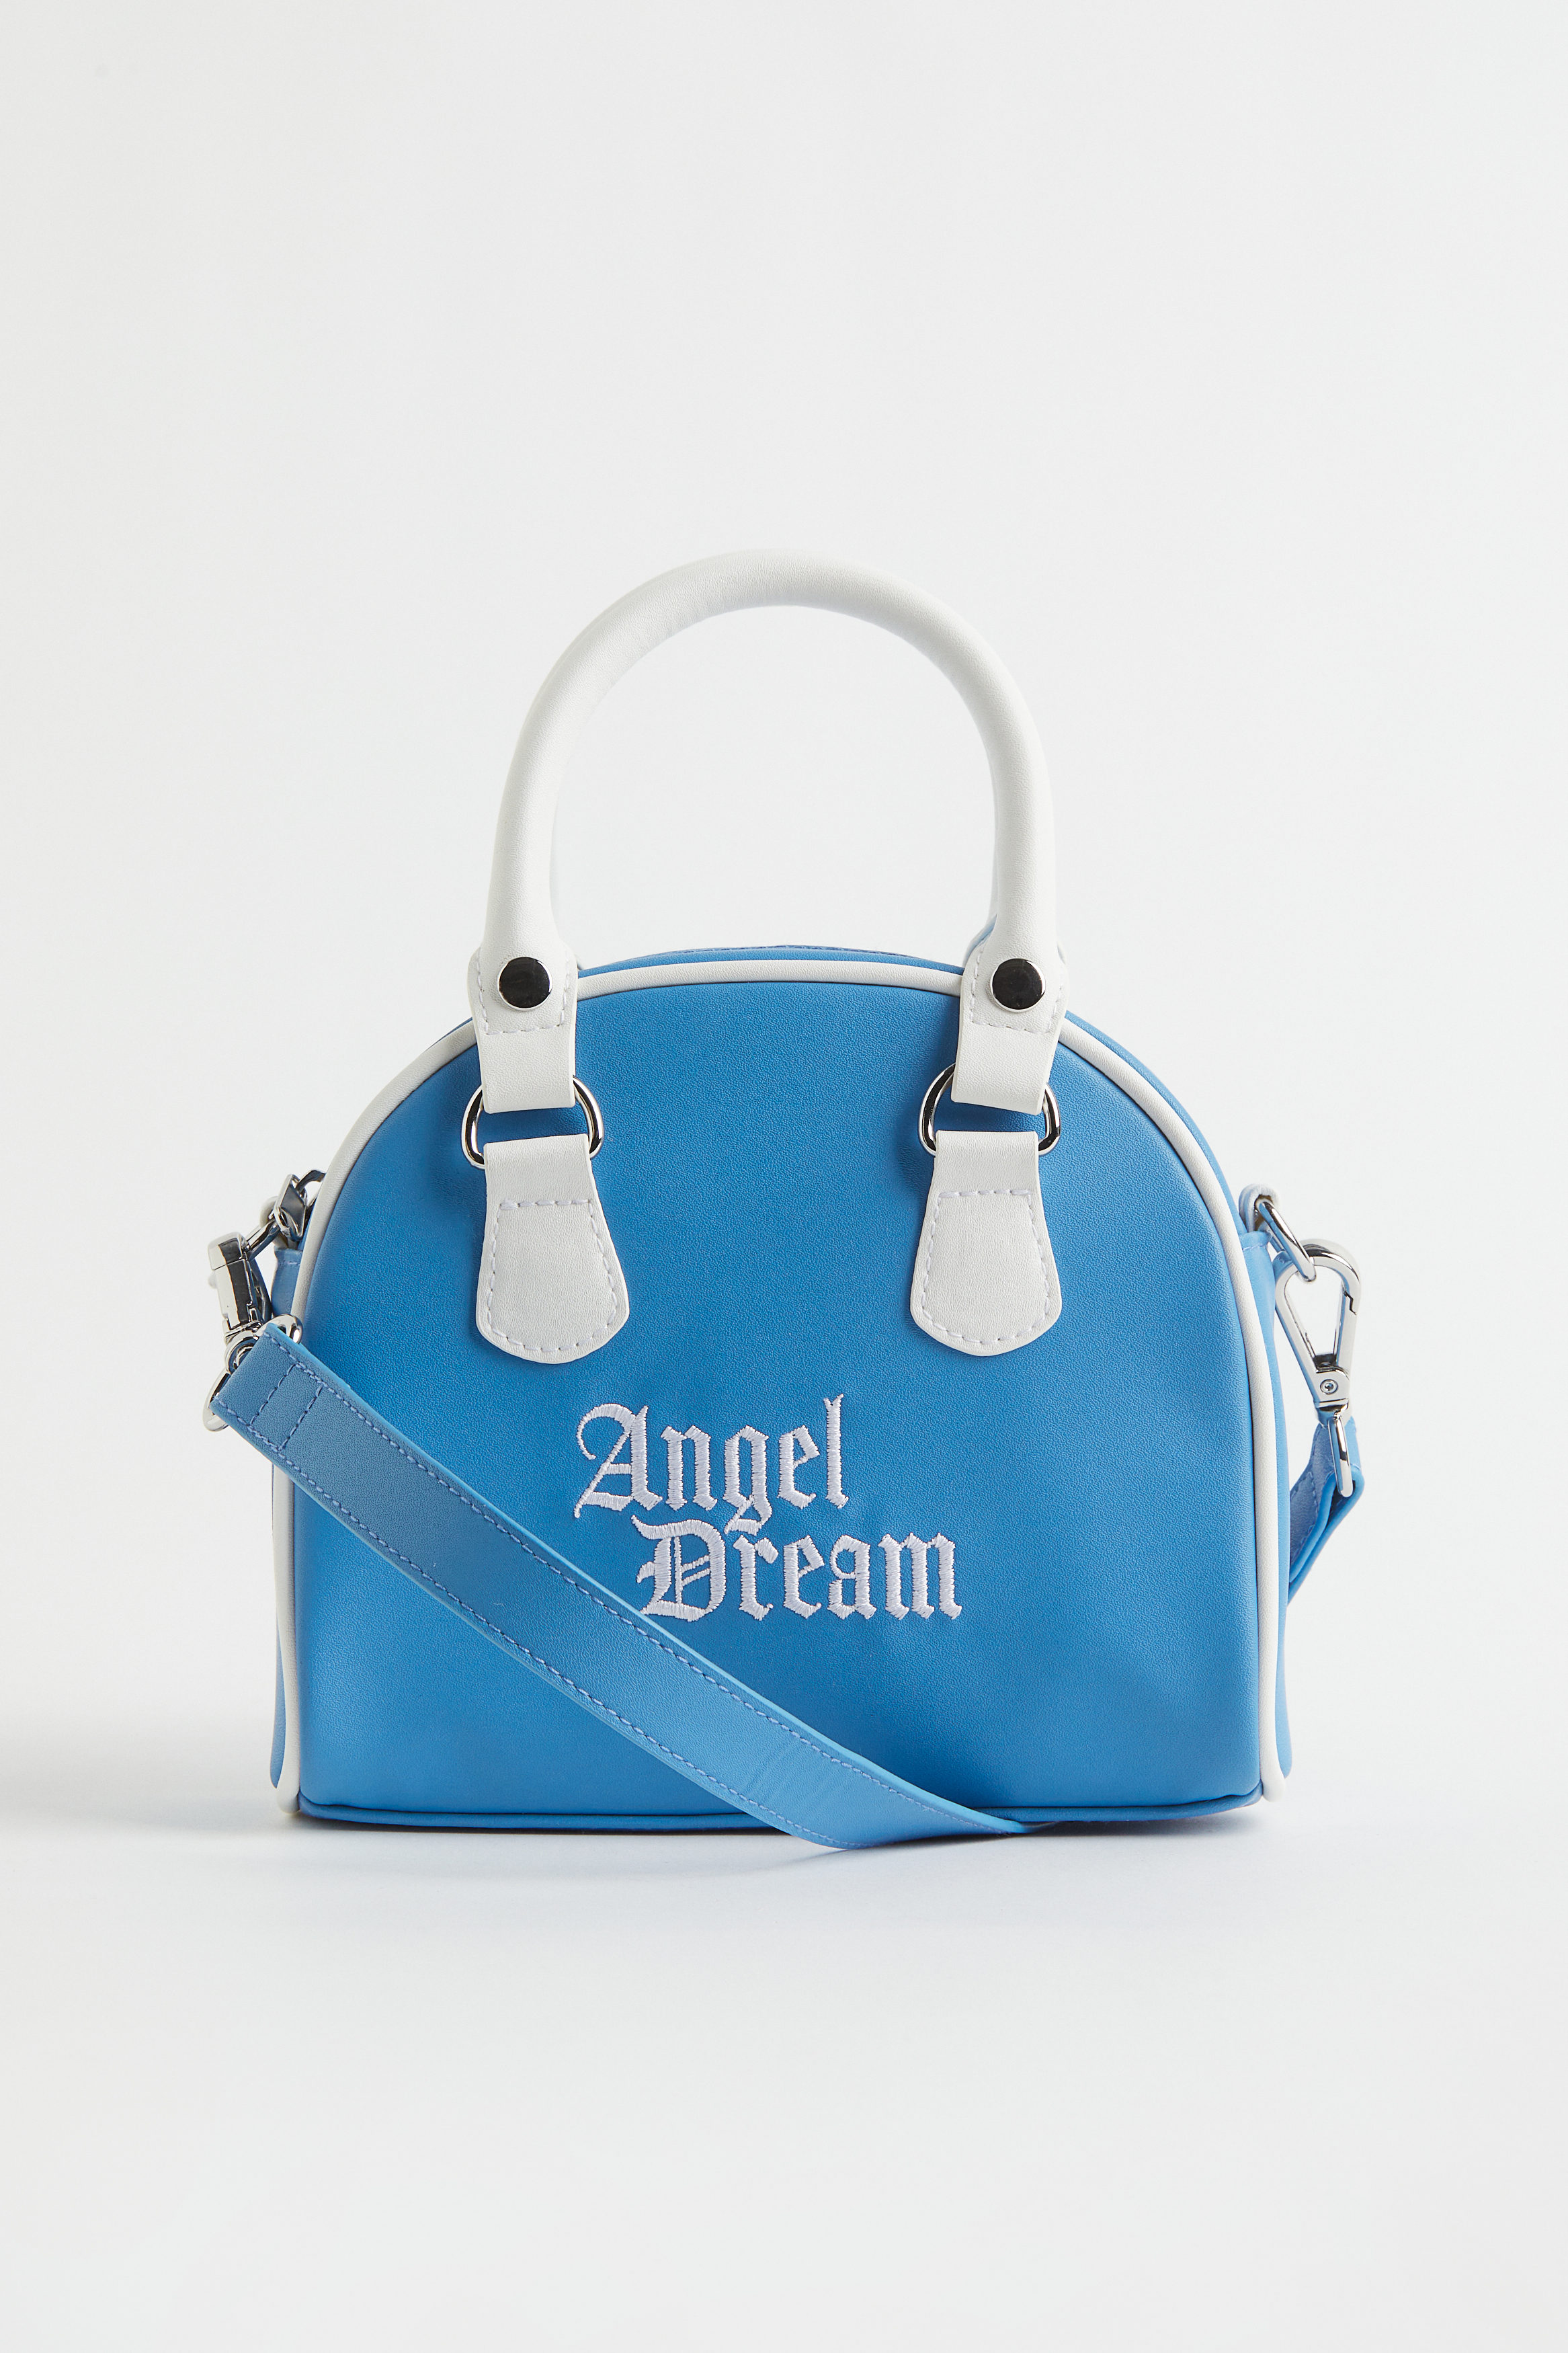 Billede af H&M Håndtaske Blå/angel Dream, Skuldertasker. Farve: Blue/angel dream I størrelse Onesize